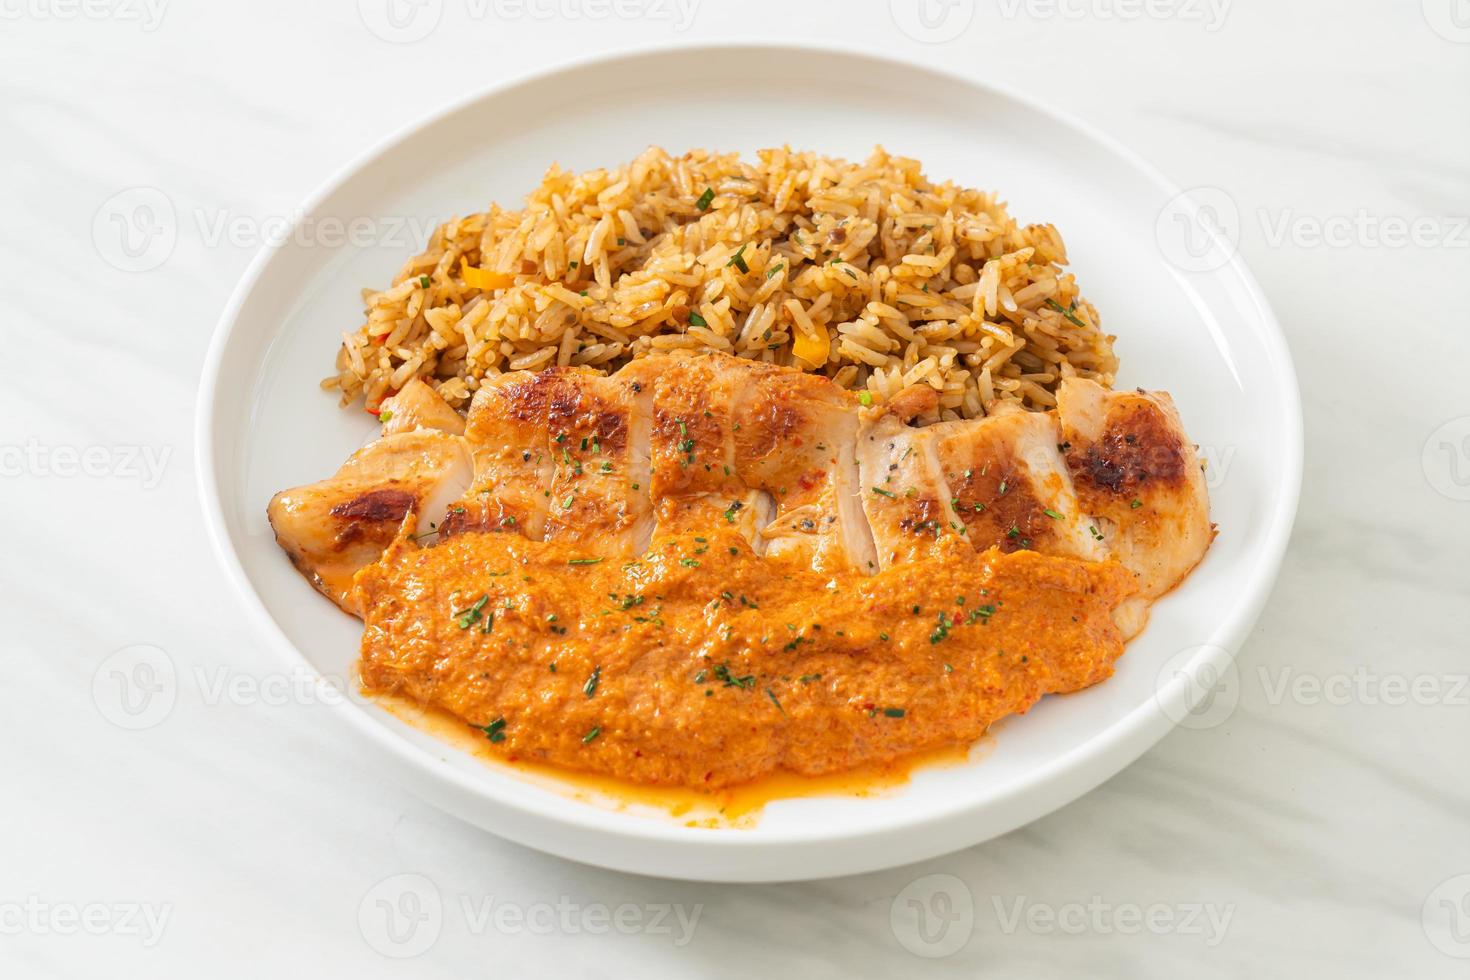 bife de frango grelhado com molho de curry vermelho e arroz - estilo de comida muçulmana foto